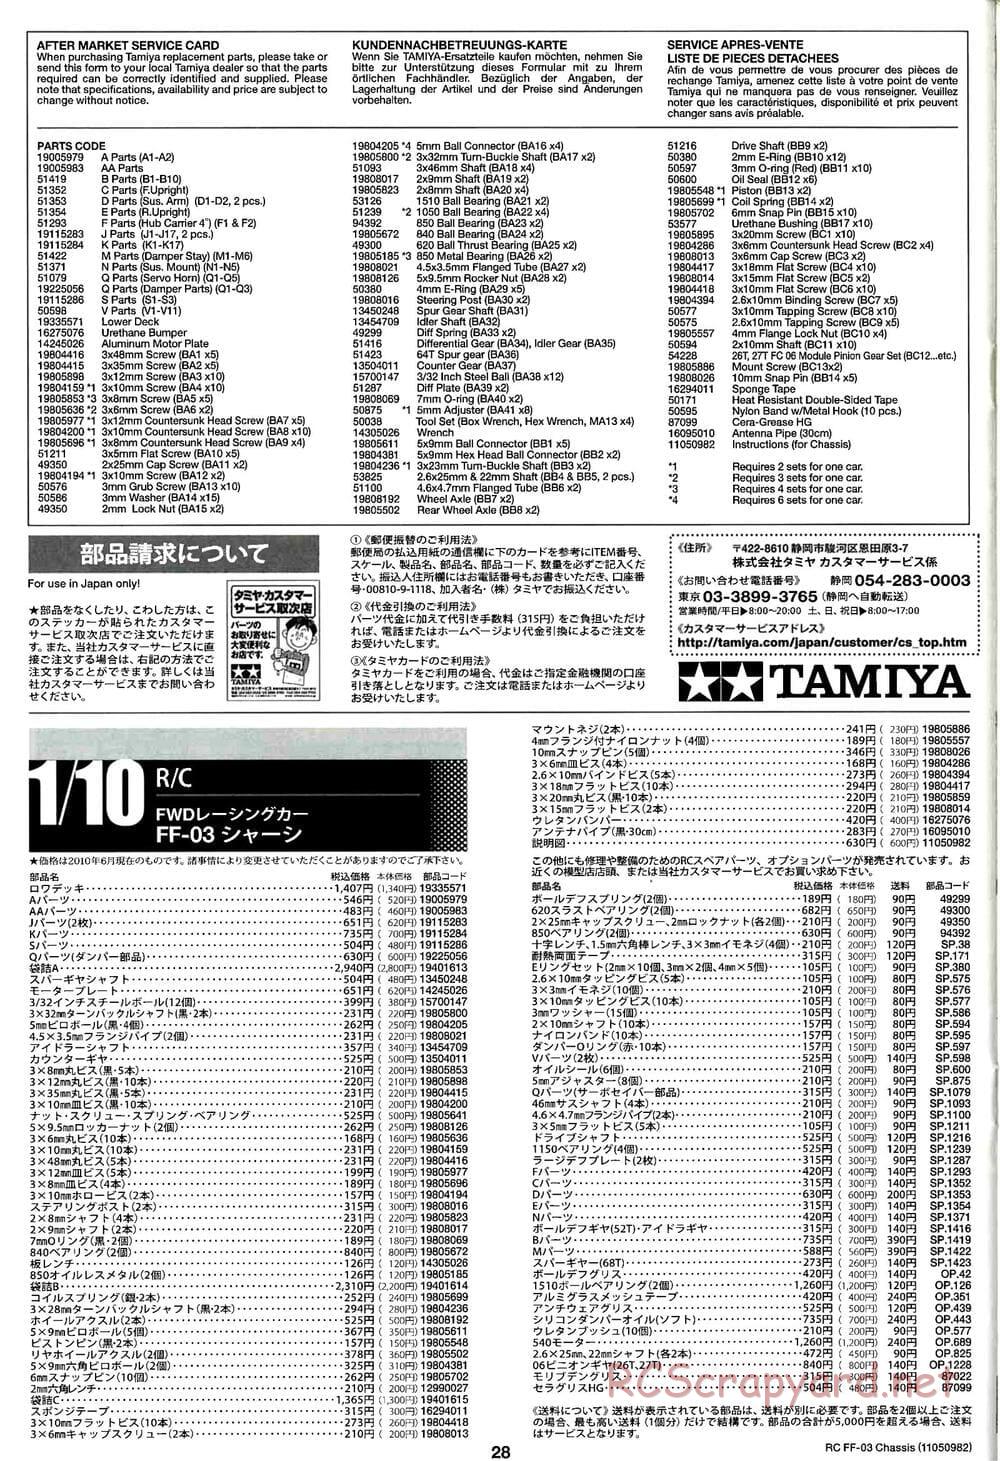 Tamiya - Honda CR-Z - FF-03 Chassis - Manual - Page 28